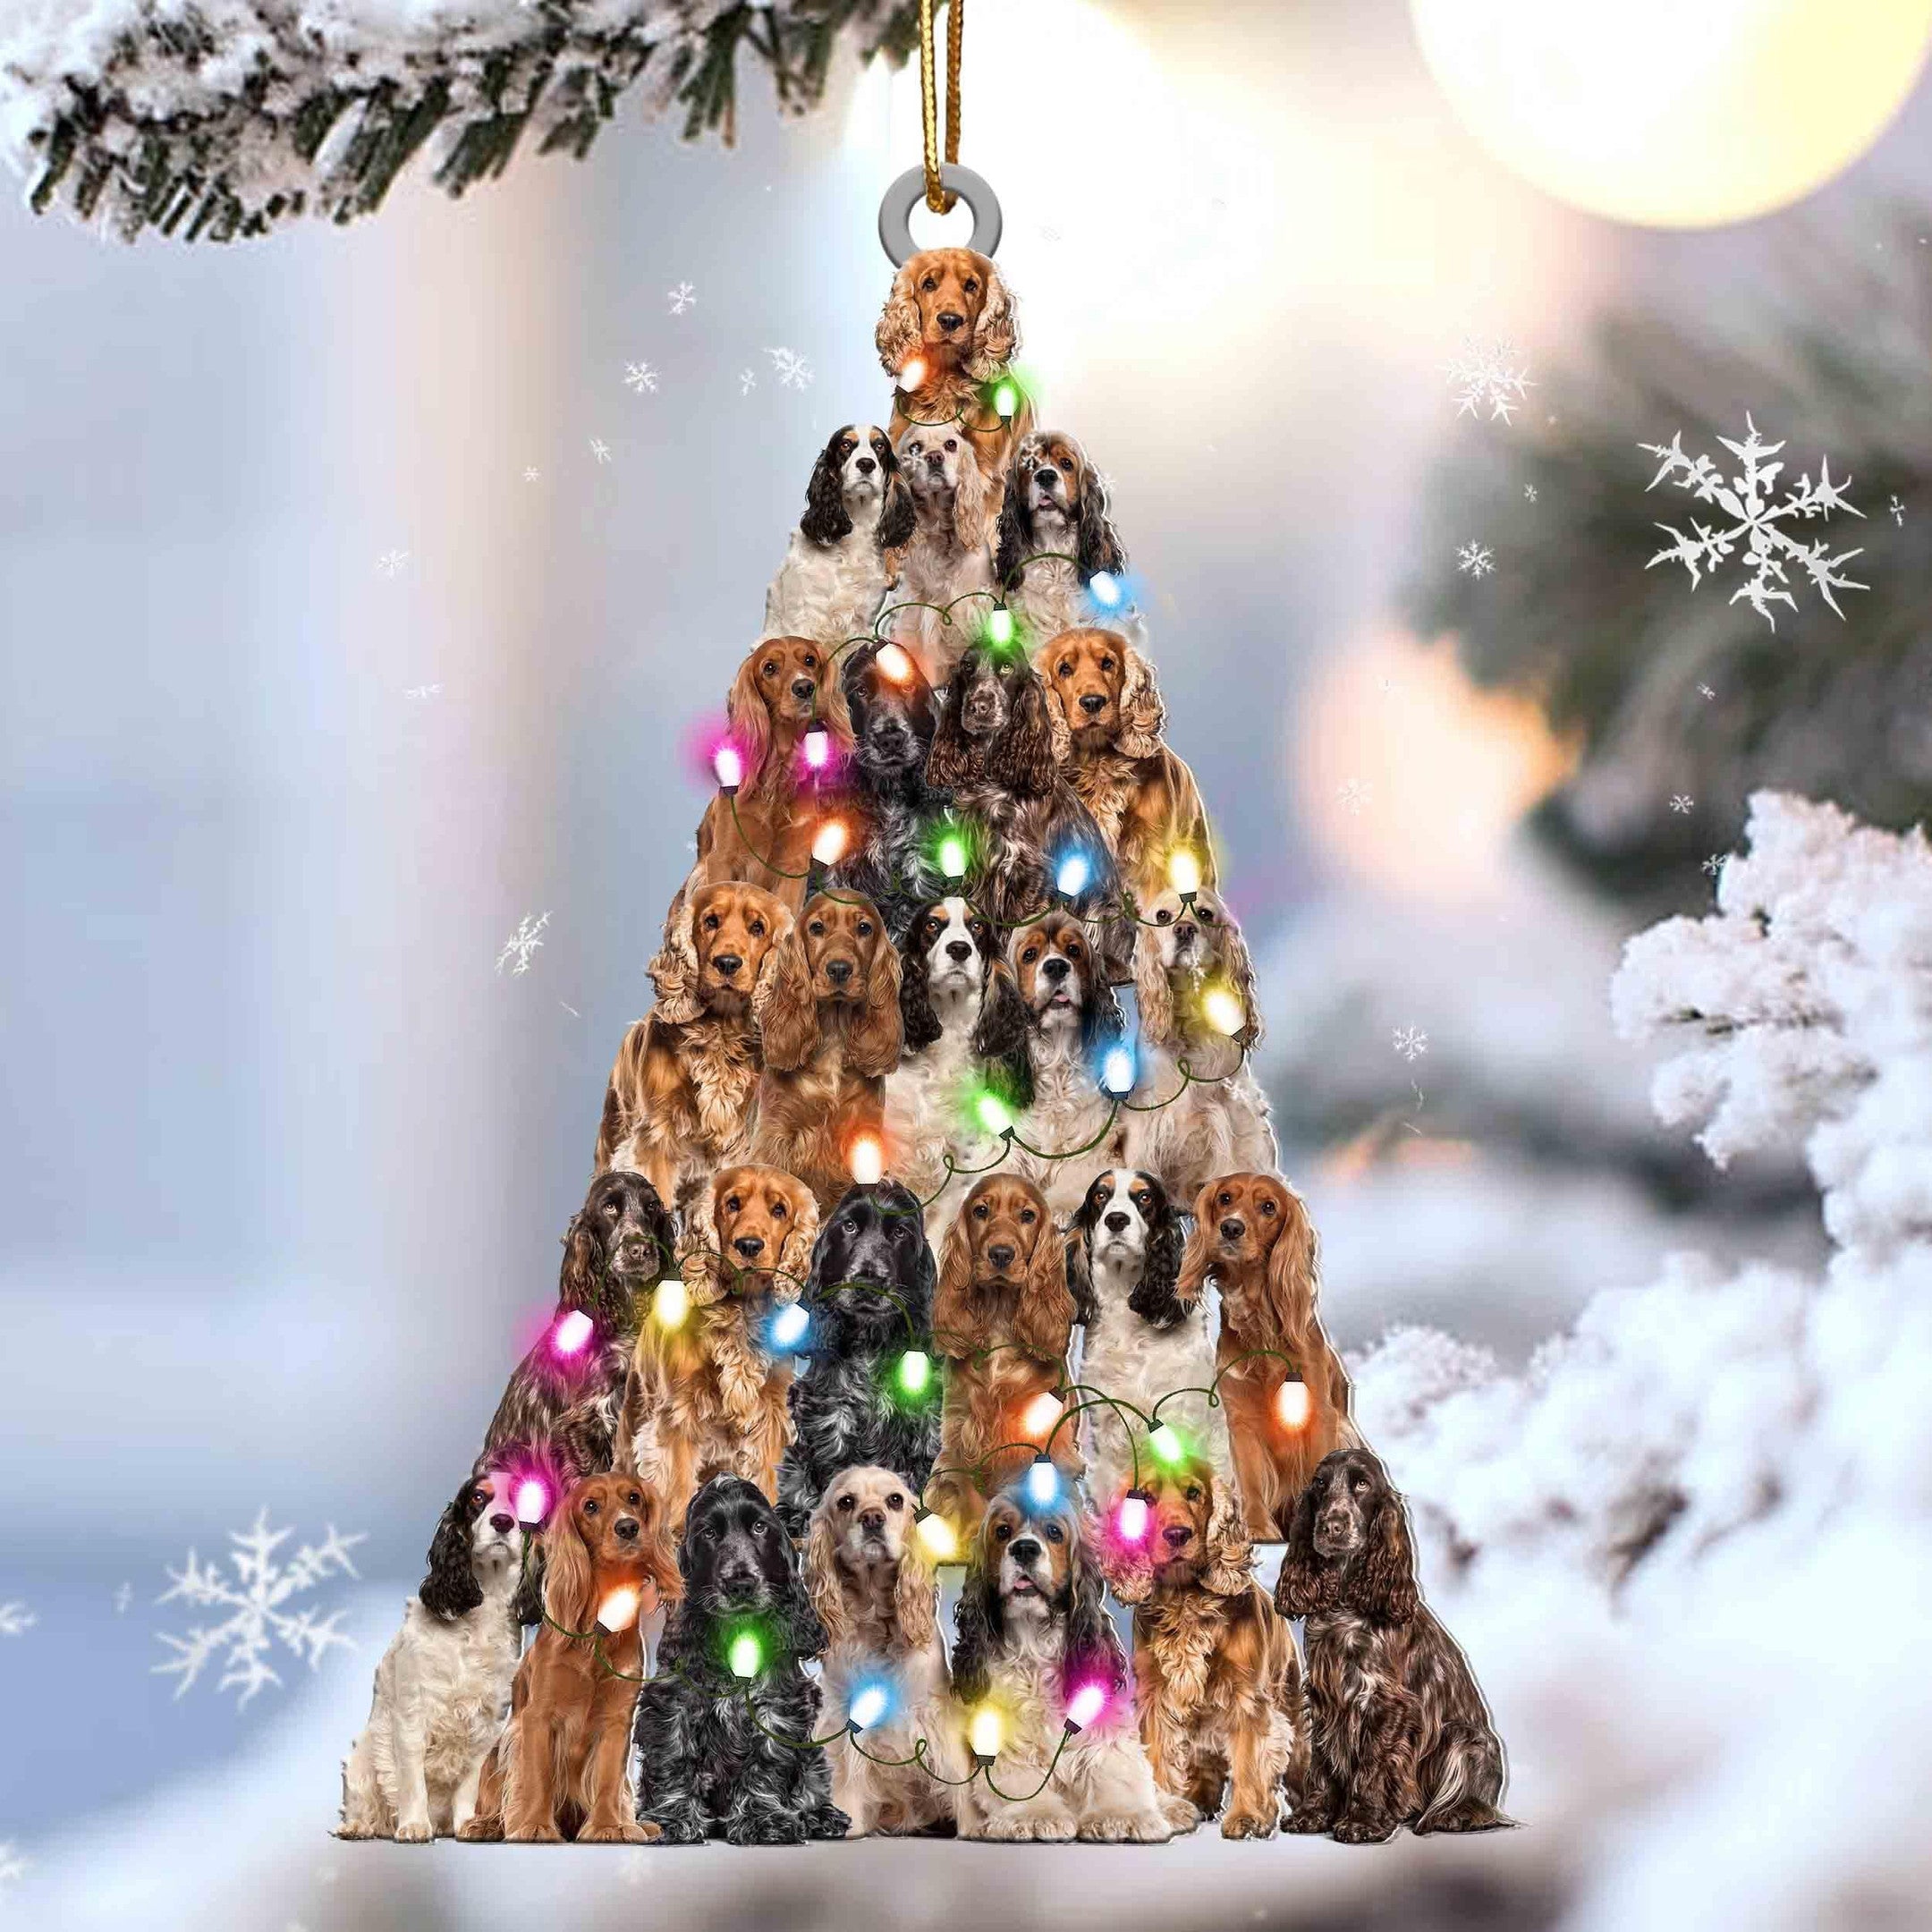 Cocker Spaniel Christmas Tree Shaped Ornament For Cocker Spaniel Lover Gift For Dog Lover Ornament